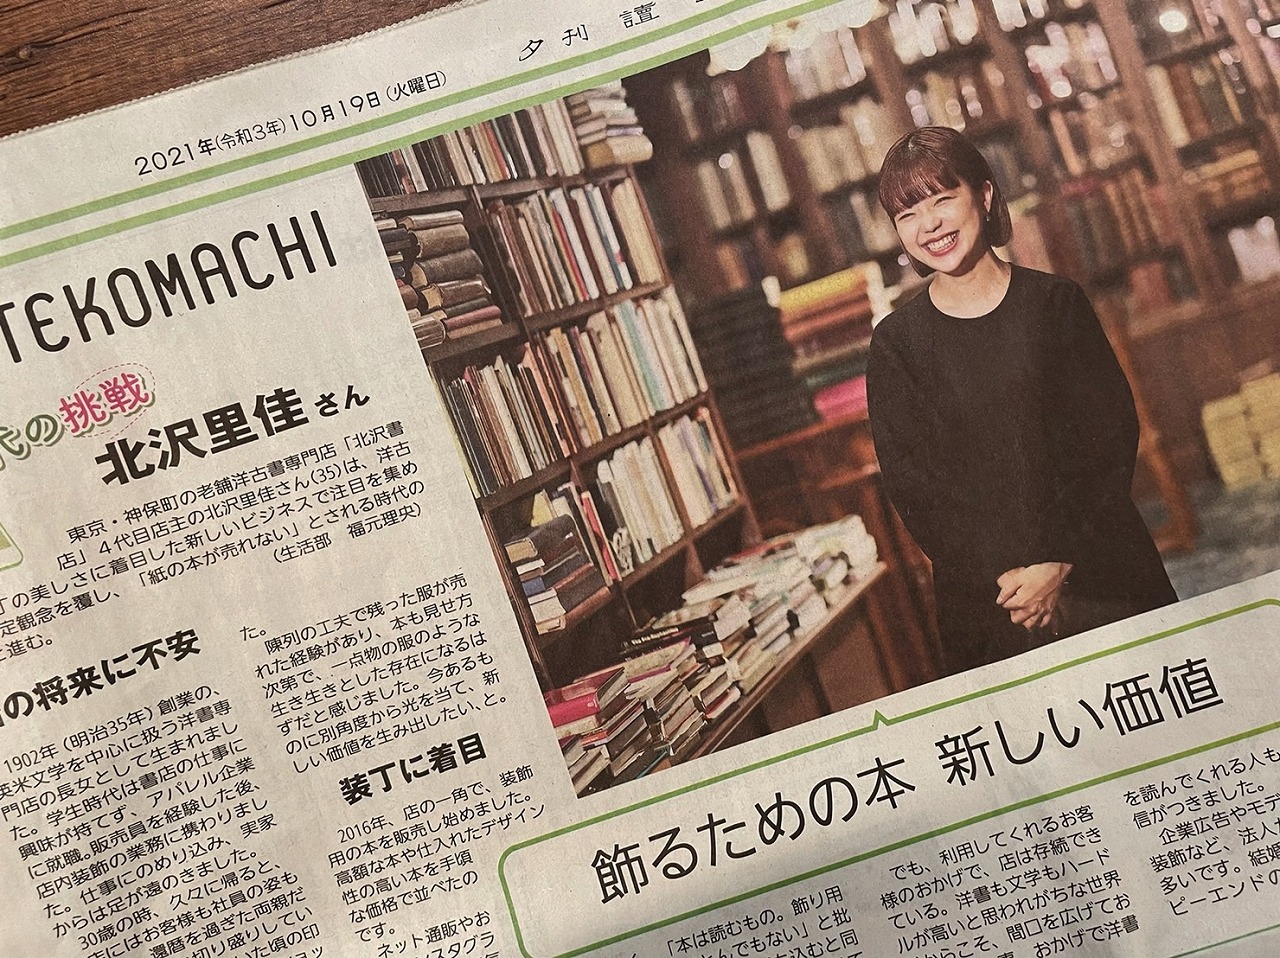 【読売新聞】【OTEKOMACHI】代表・北澤里佳のインタビュー記事が掲載されました